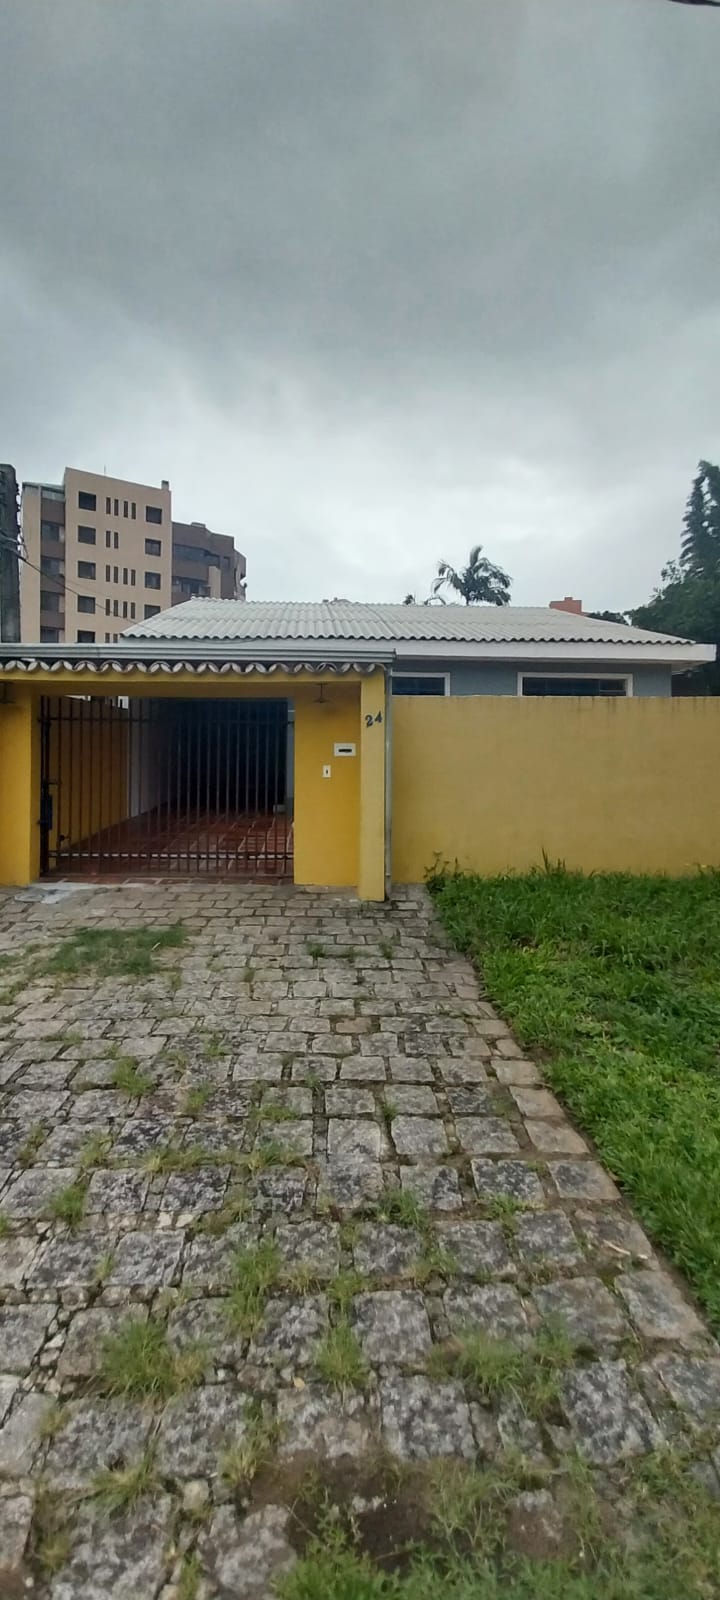 Casa para alugar possuí 206,00 M² 4 dormitório no Cabral, Curitiba/ PR